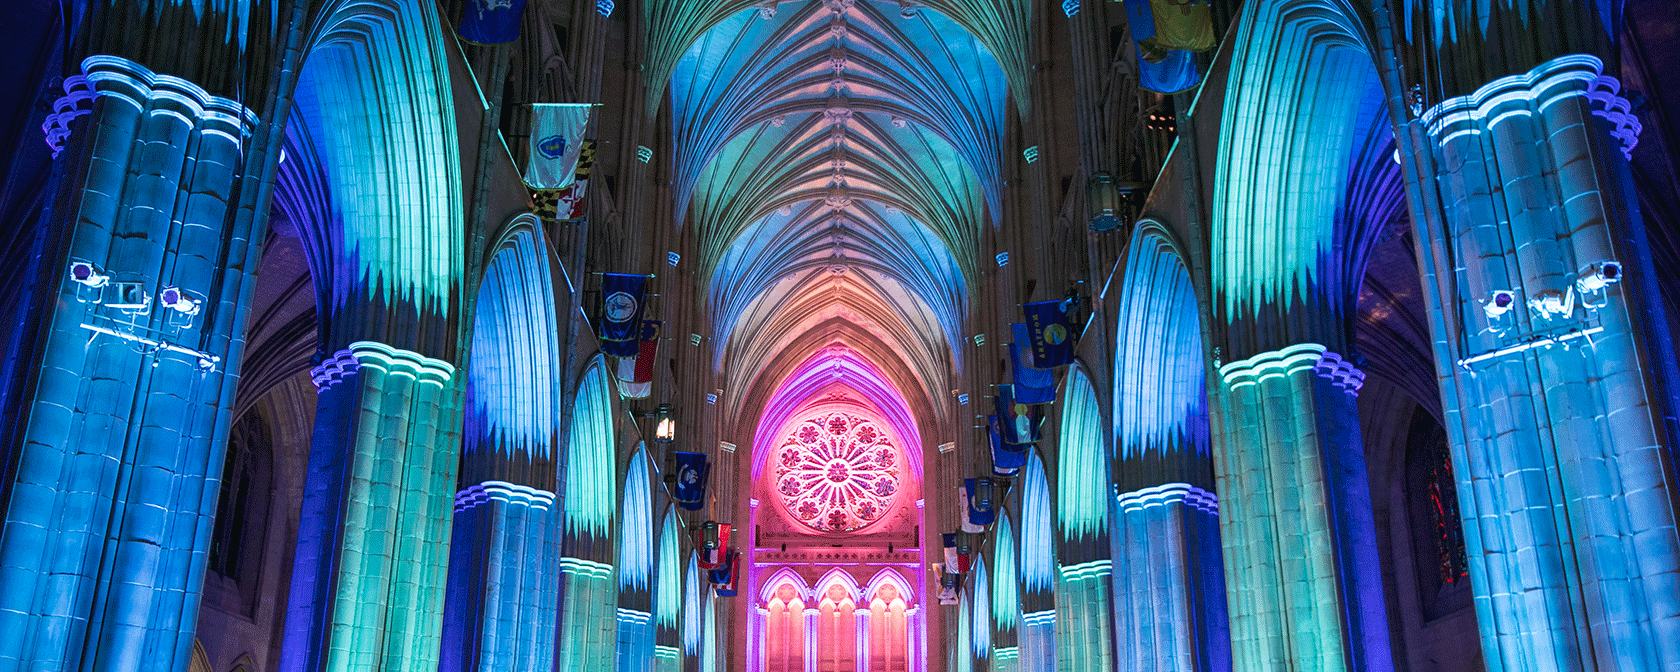 La catedral se ilumina en el interior con luces azules y rosas (Crédito: Jason Dixson)